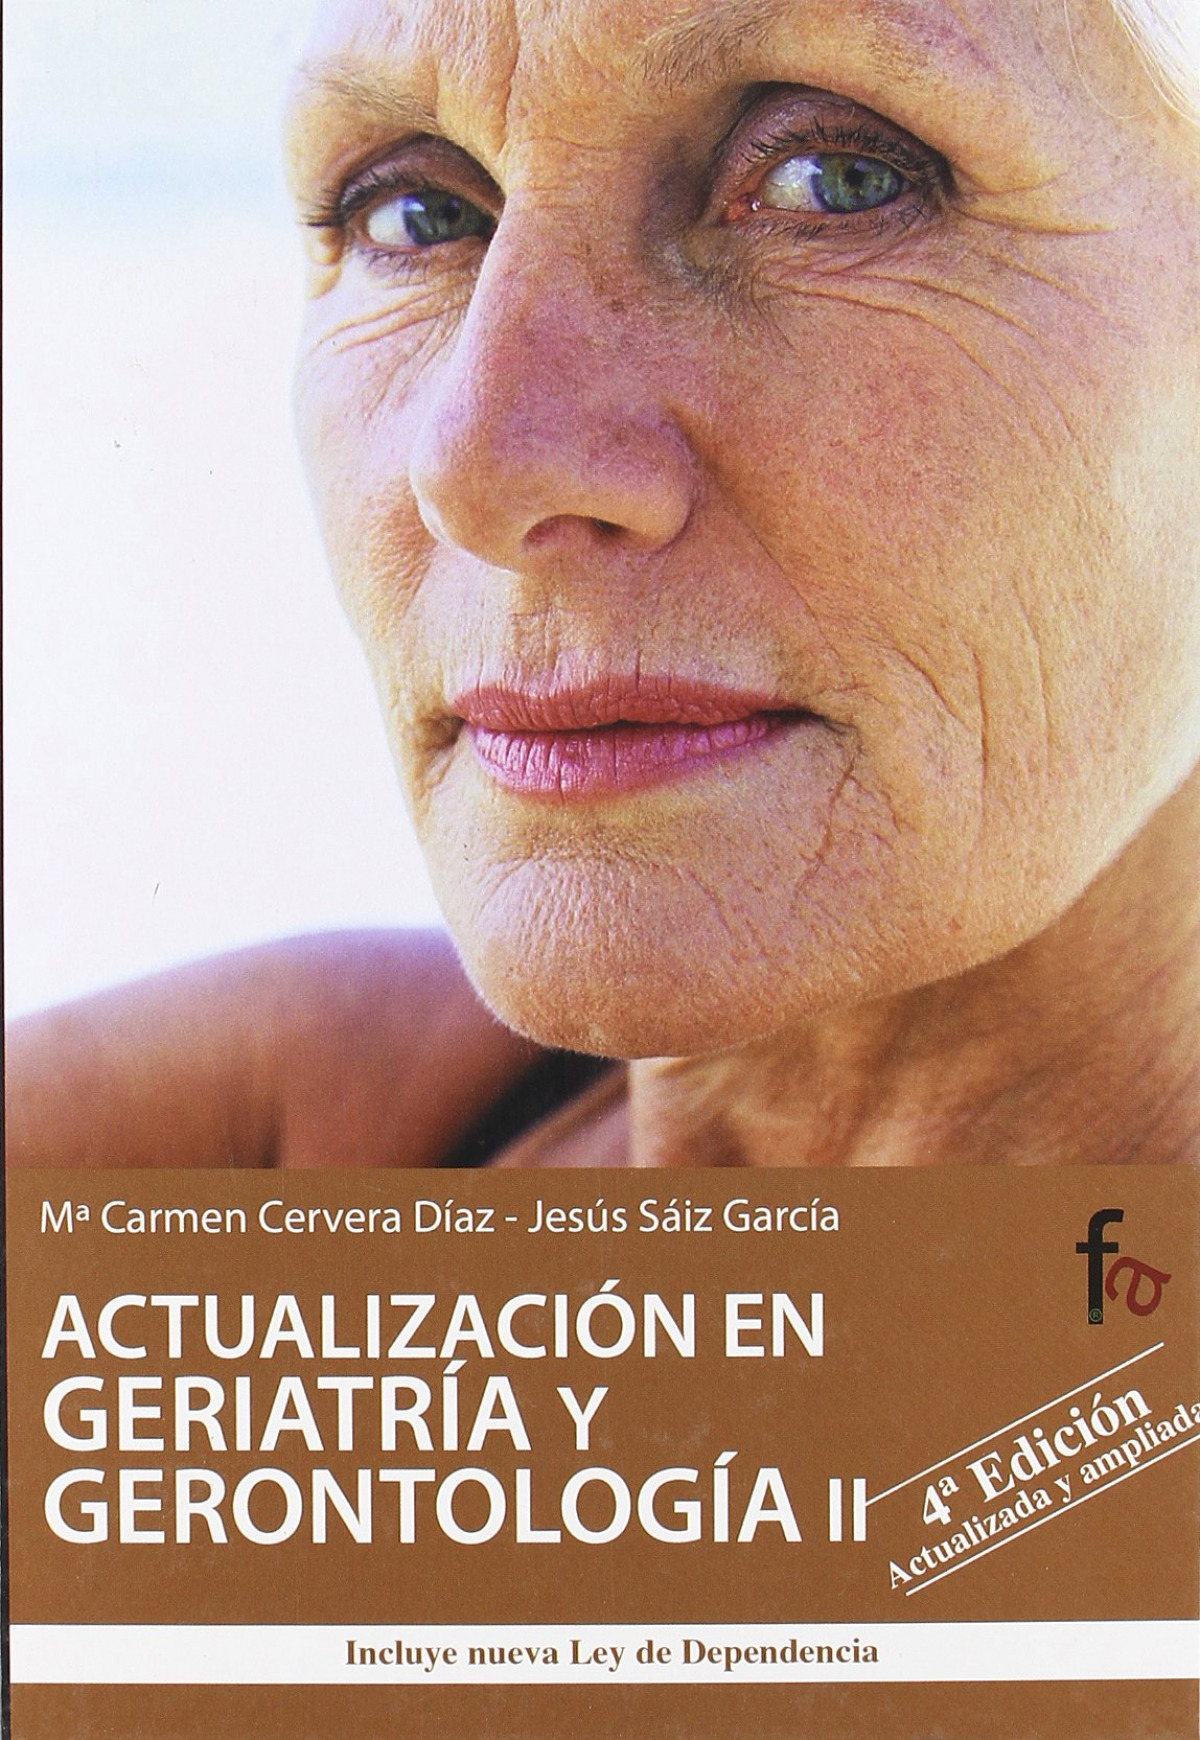 Actualización en geriatría y gerontología ii 4ªed - Mª Carmen Cervera Díaz Y Jesús Sáiz Garc